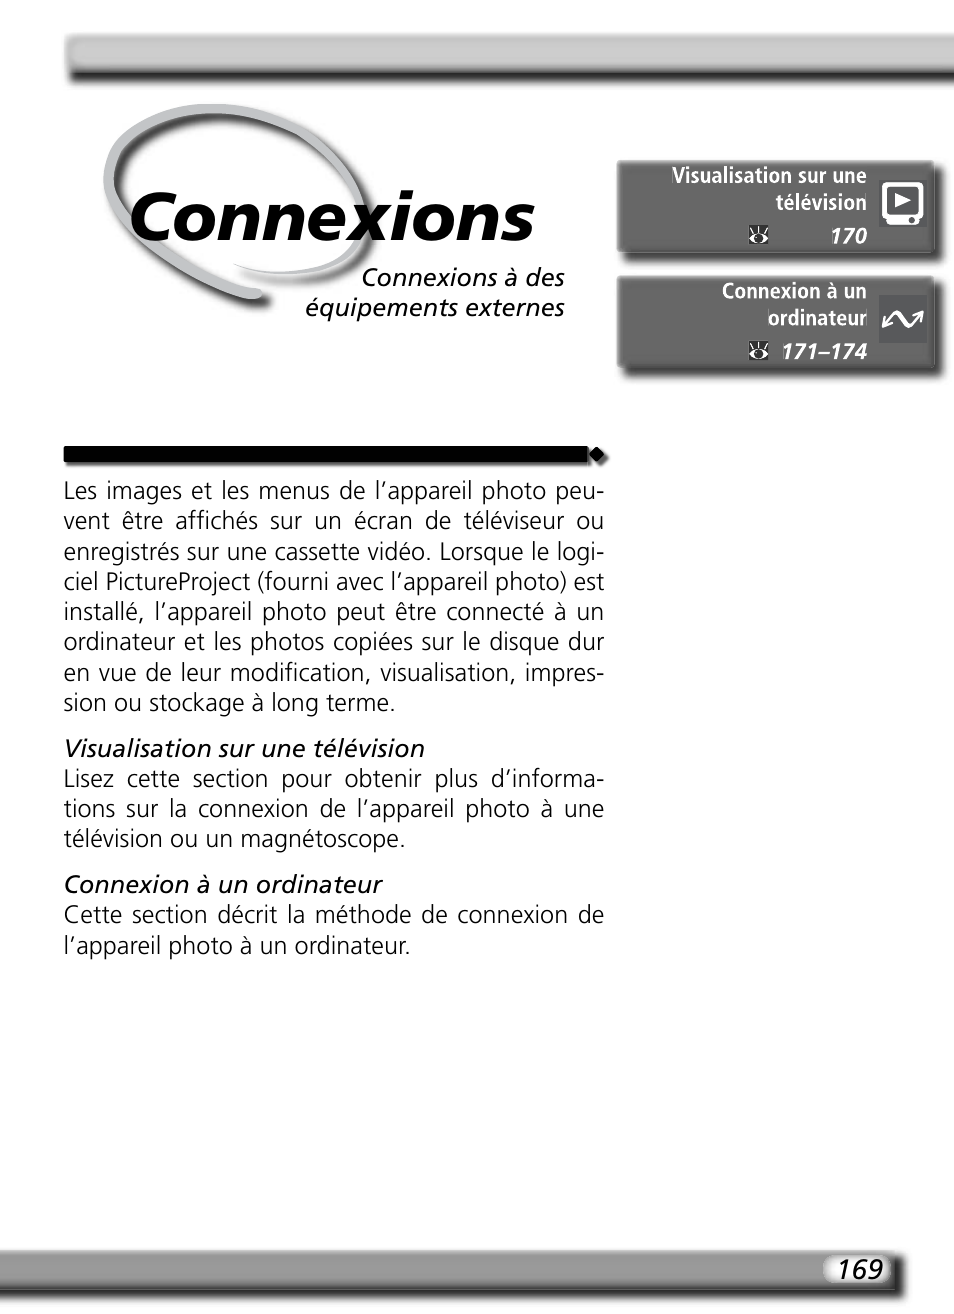 Connexions | Nikon D70 Manuel d'utilisation | Page 179 / 218